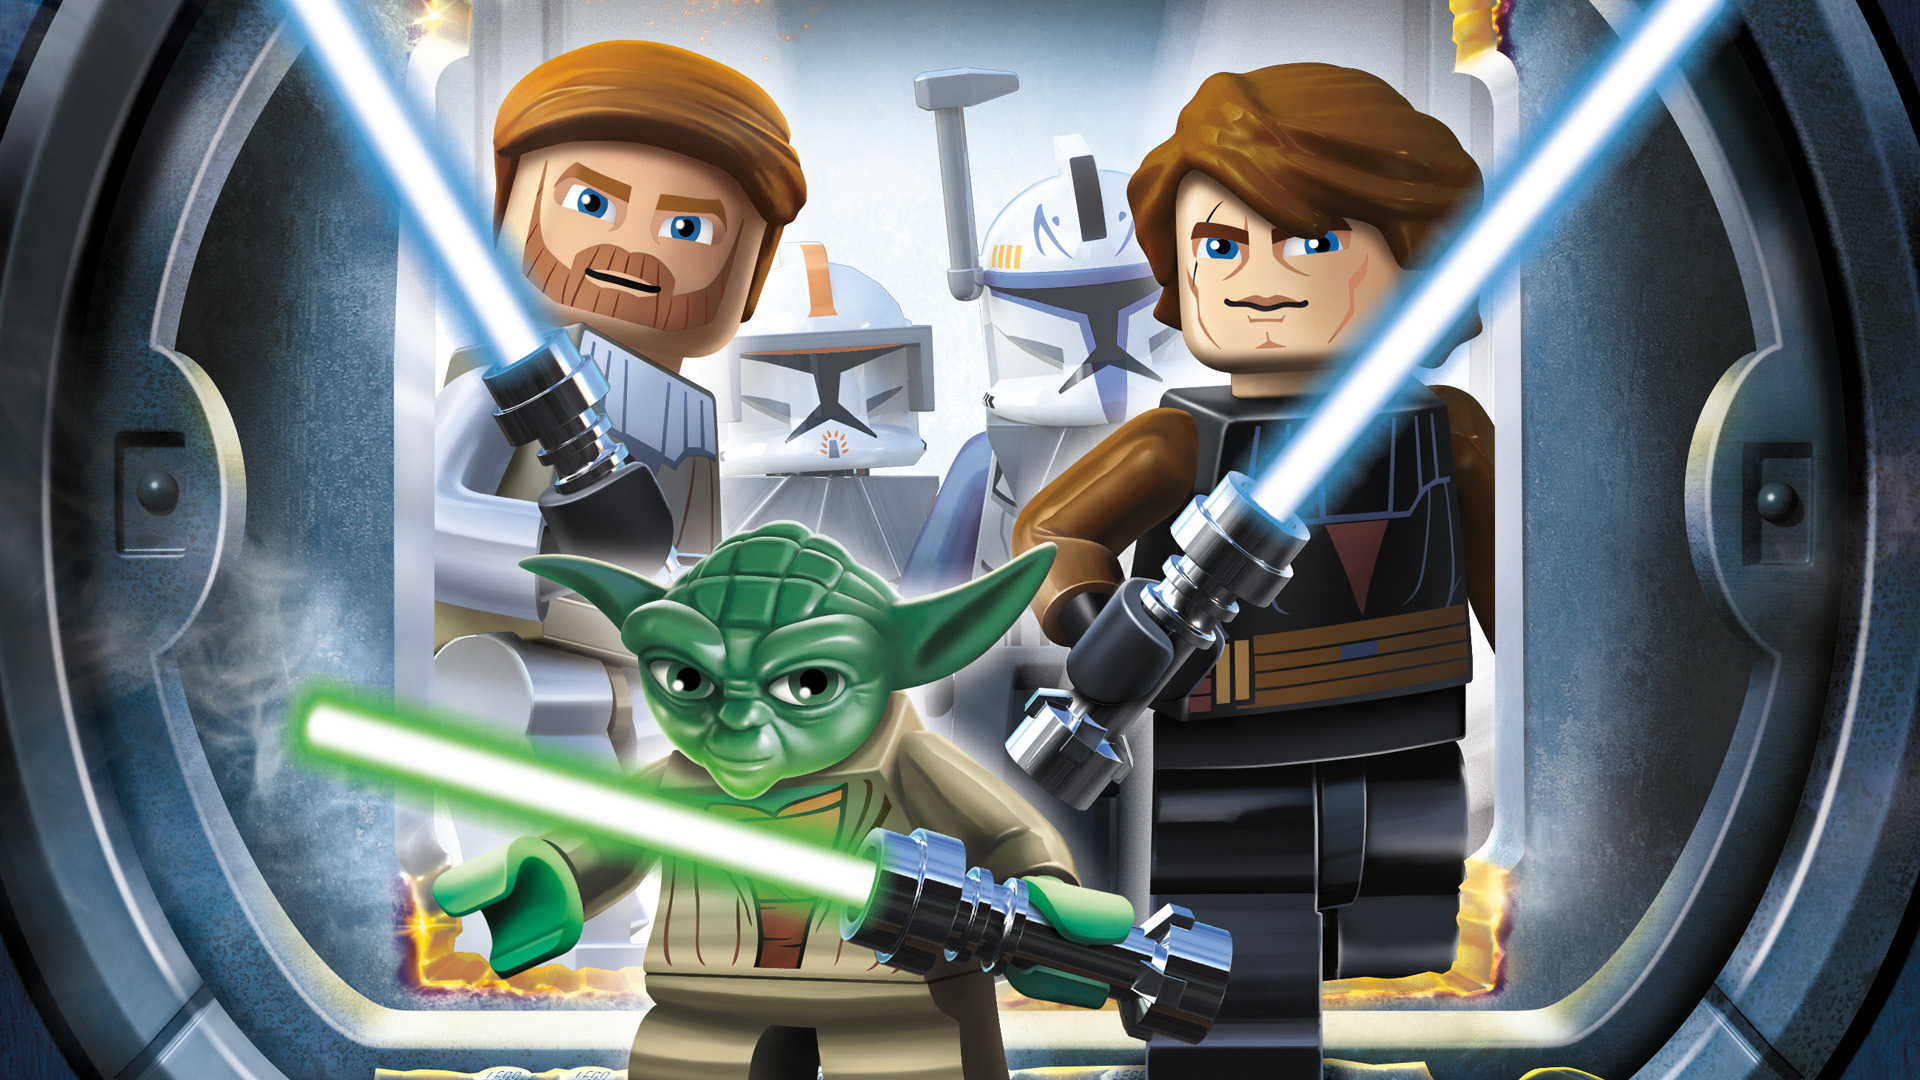 Lego Star Wars Iii The Clone Puter Wallpaper Desktop